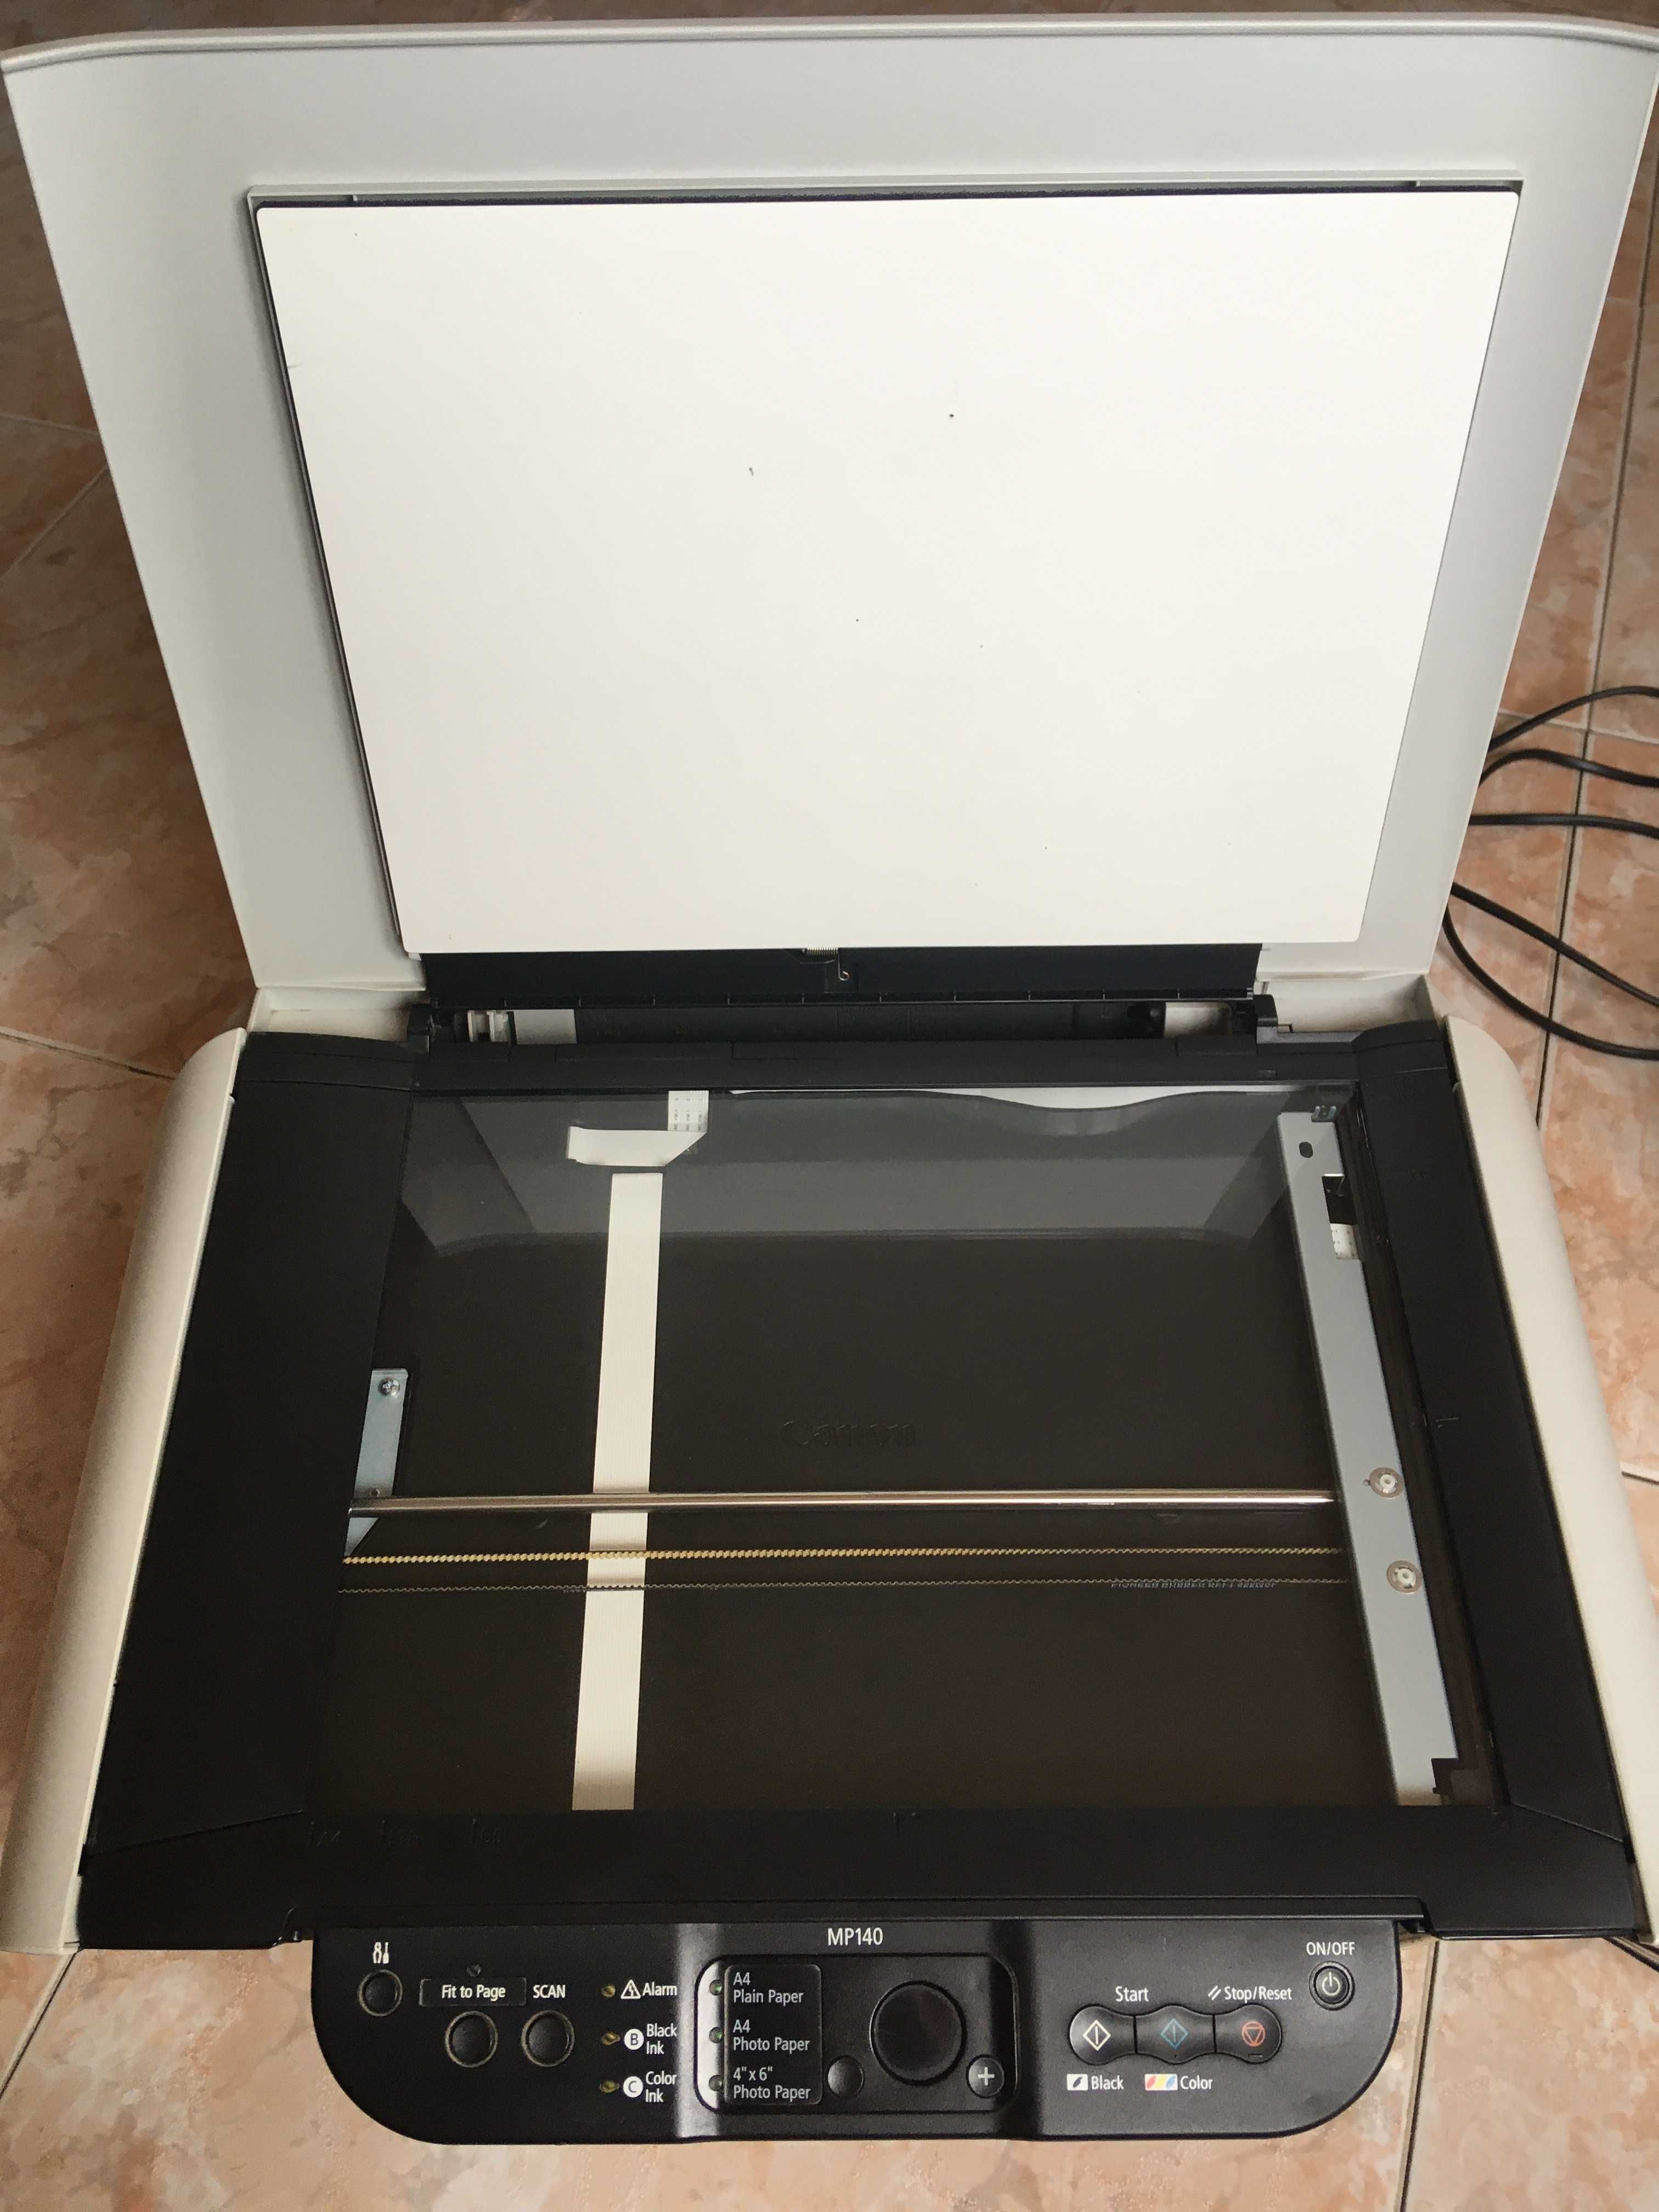 Продам цветной струйный принтер/сканер Canon PIXMA MP140 с СНПЧ